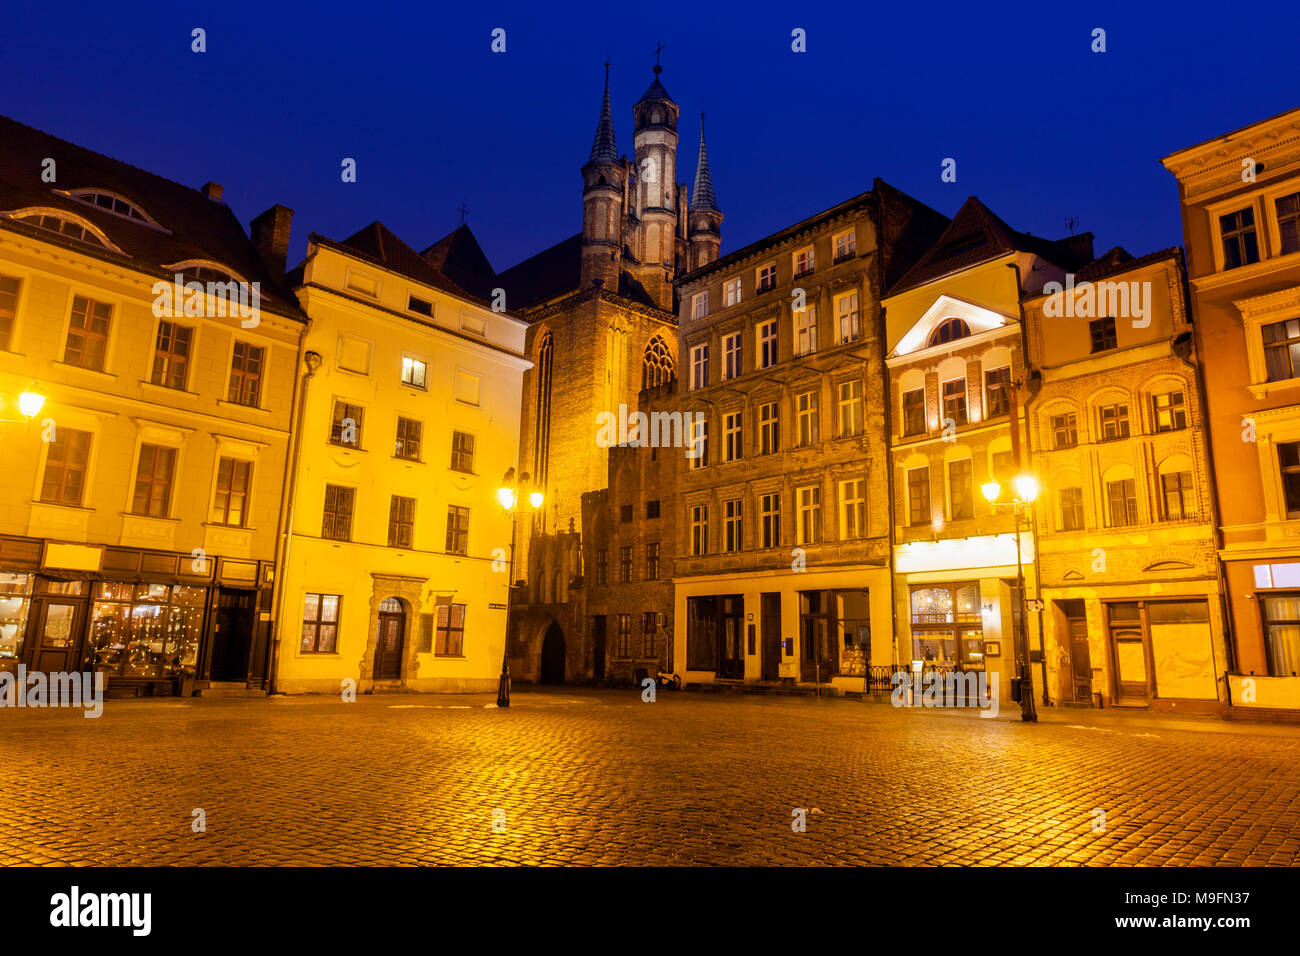 Old Town of Torun at night. Torun, Kuyavian-Pomeranian Voivodeship, Poland. Stock Photo